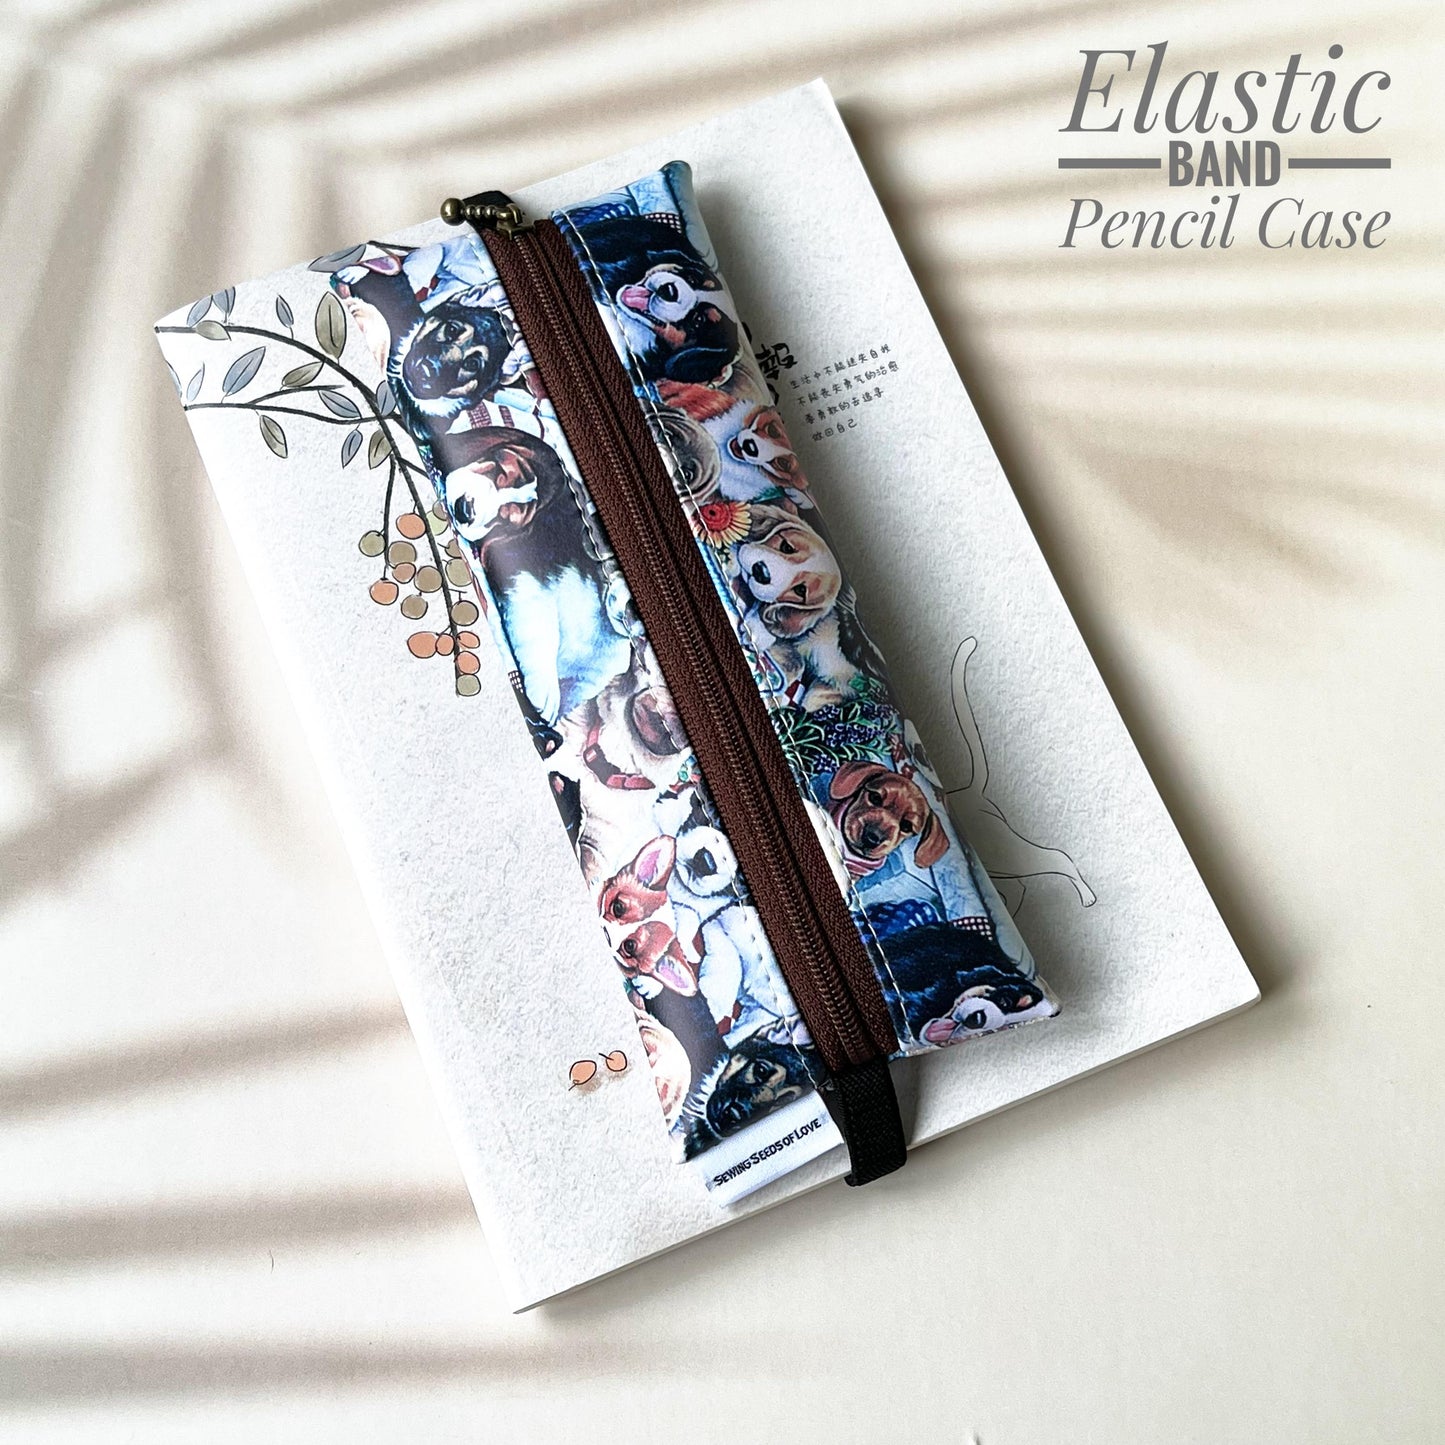 Elastic Band Pencil Case - EBPC09